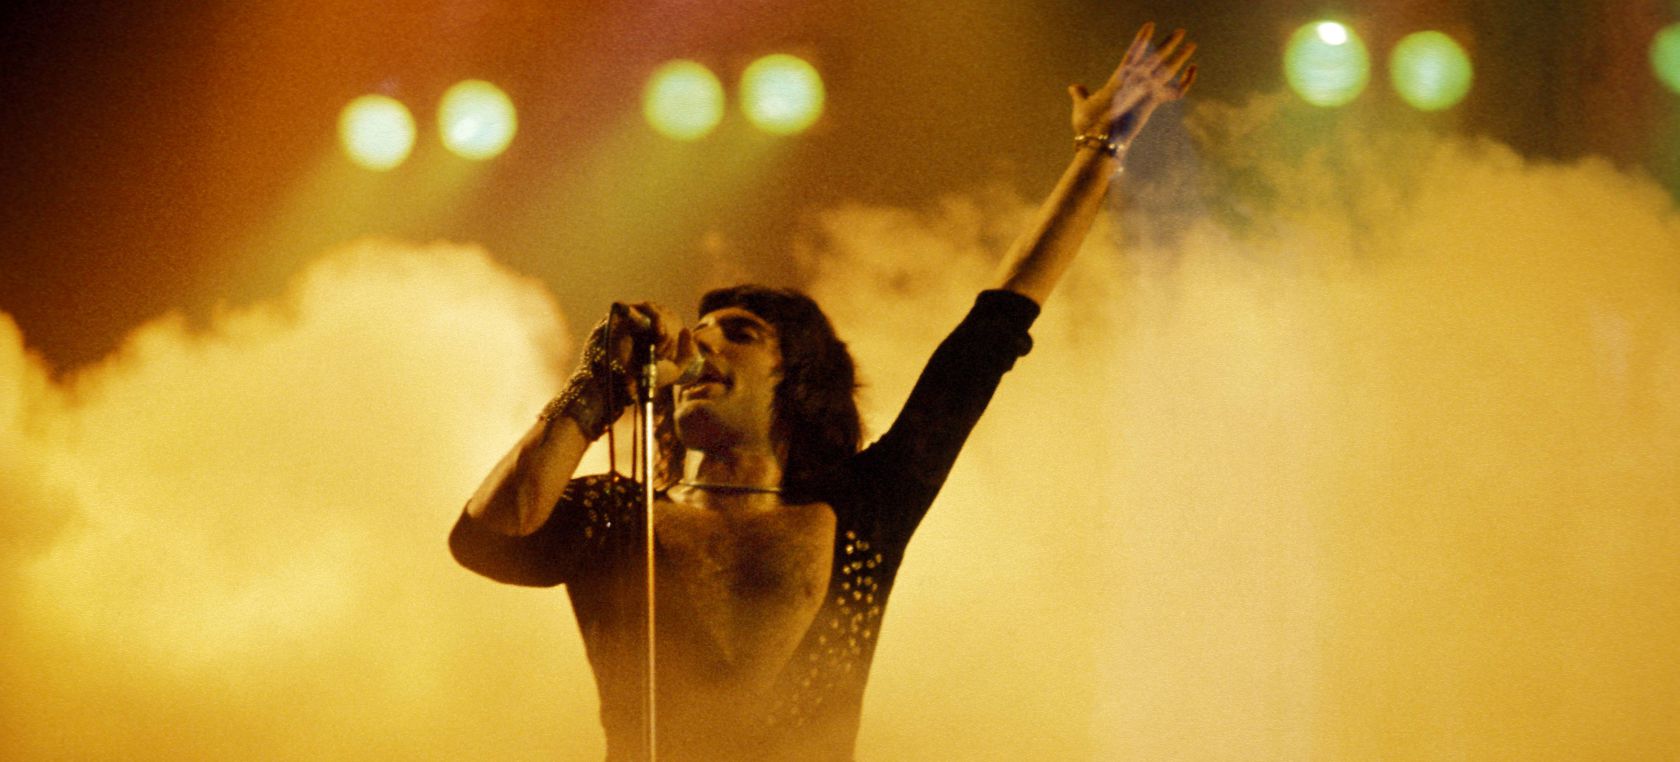 Freddie Mercury antes de Freddie Mercury: los inicios del líder de Queen